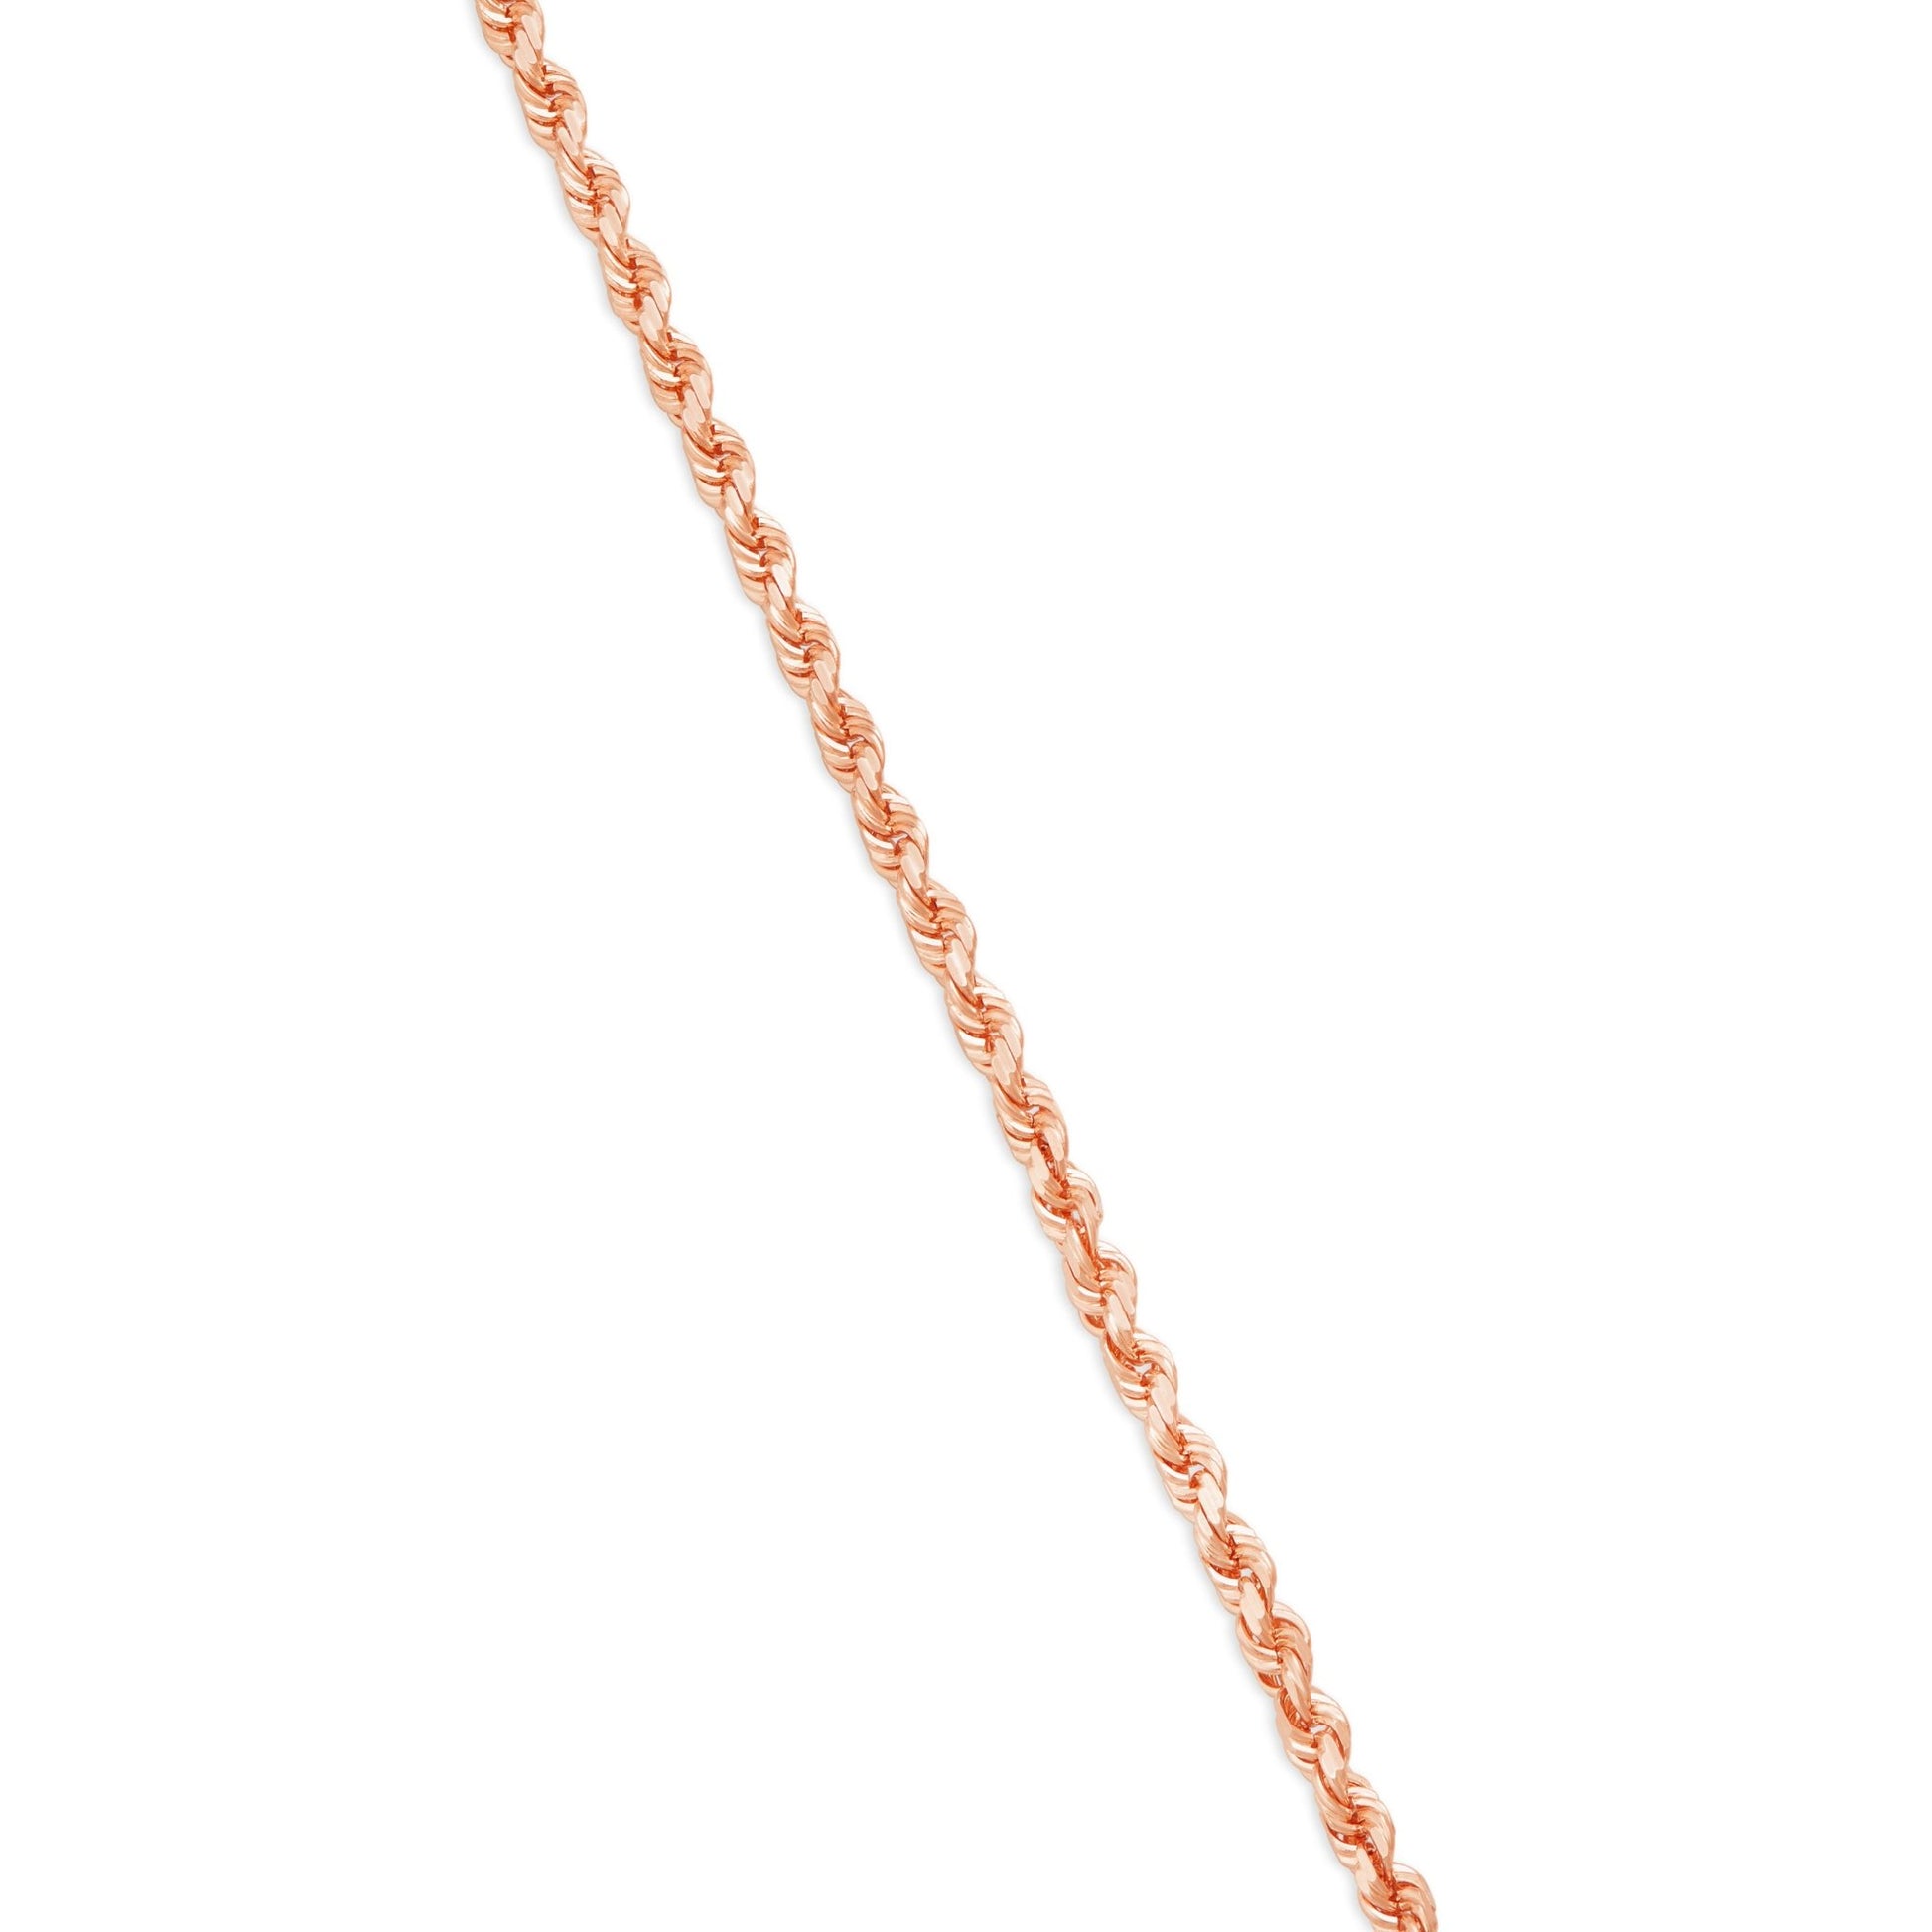 Gold Rope Chain, 3 mm - Shyne Jewelers 430-00790 10K 16 " Rose Gold Shyne Jewelers